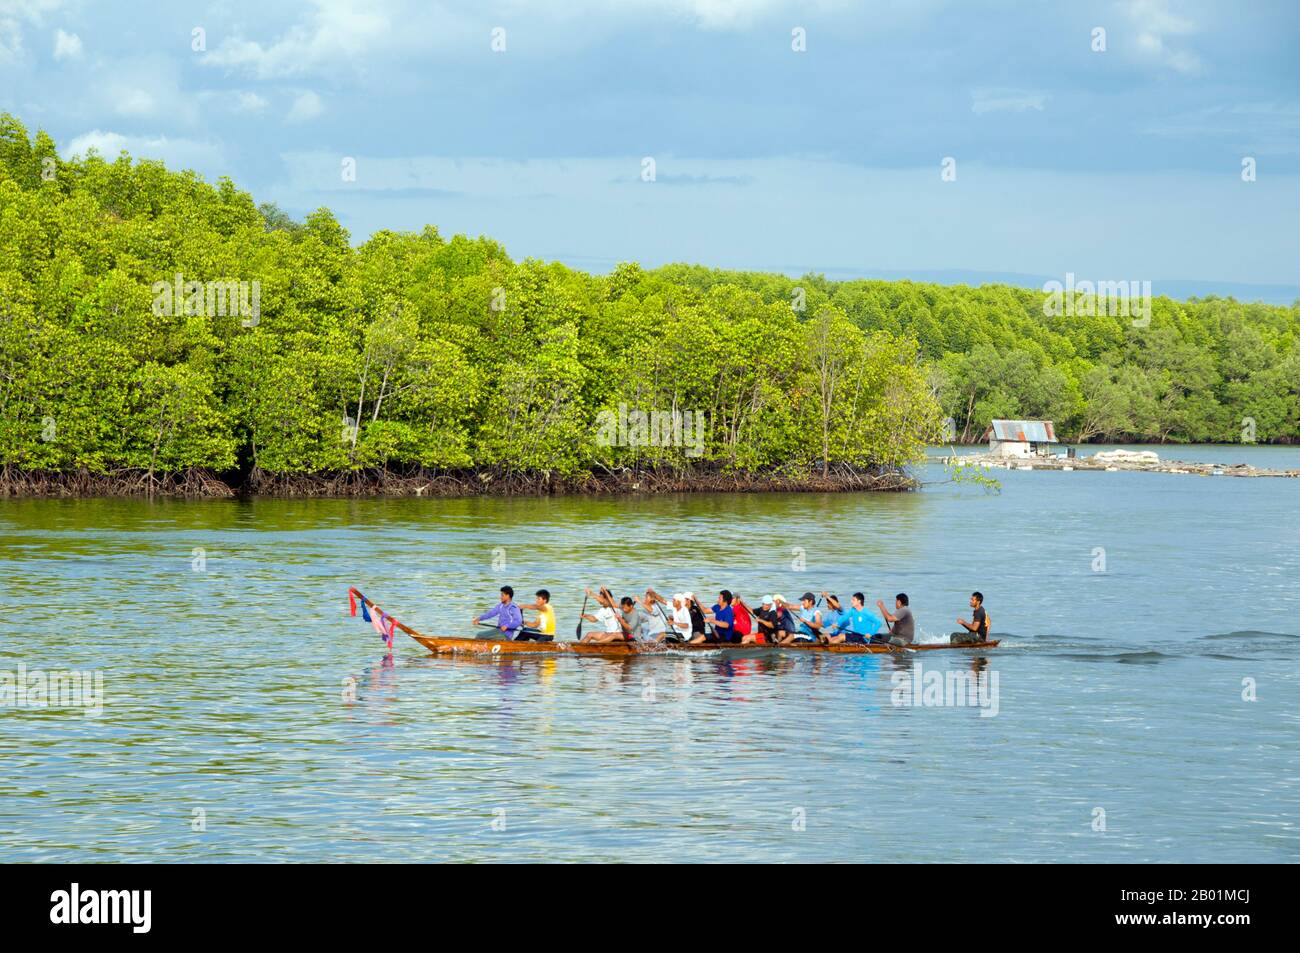 Thailandia: Una squadra di canottaggio sul fiume Krabi, vicino a Krabi Town e Ko Klang, provincia di Krabi. Un tempo un semplice porto di pescatori, Krabi sta diventando un centro di eco-turismo, nonché il principale punto di imbarco dei traghetti per isole come Ko Lanta a sud, Ko Phi Phi a sud-ovest e le spiagge intorno ad Ao Nang a ovest. Situata sulle rive dell'estuario di Krabi, si dice che la città prenda il nome da una spada o krabi presumibilmente scoperta nelle vicinanze. I dintorni di Krabi si distinguono per i torreggianti affioramenti calcarei, una sorta di baia di Phang Nag sulla terra, che sono diventati il simbolo della provincia di Krabi. Foto Stock